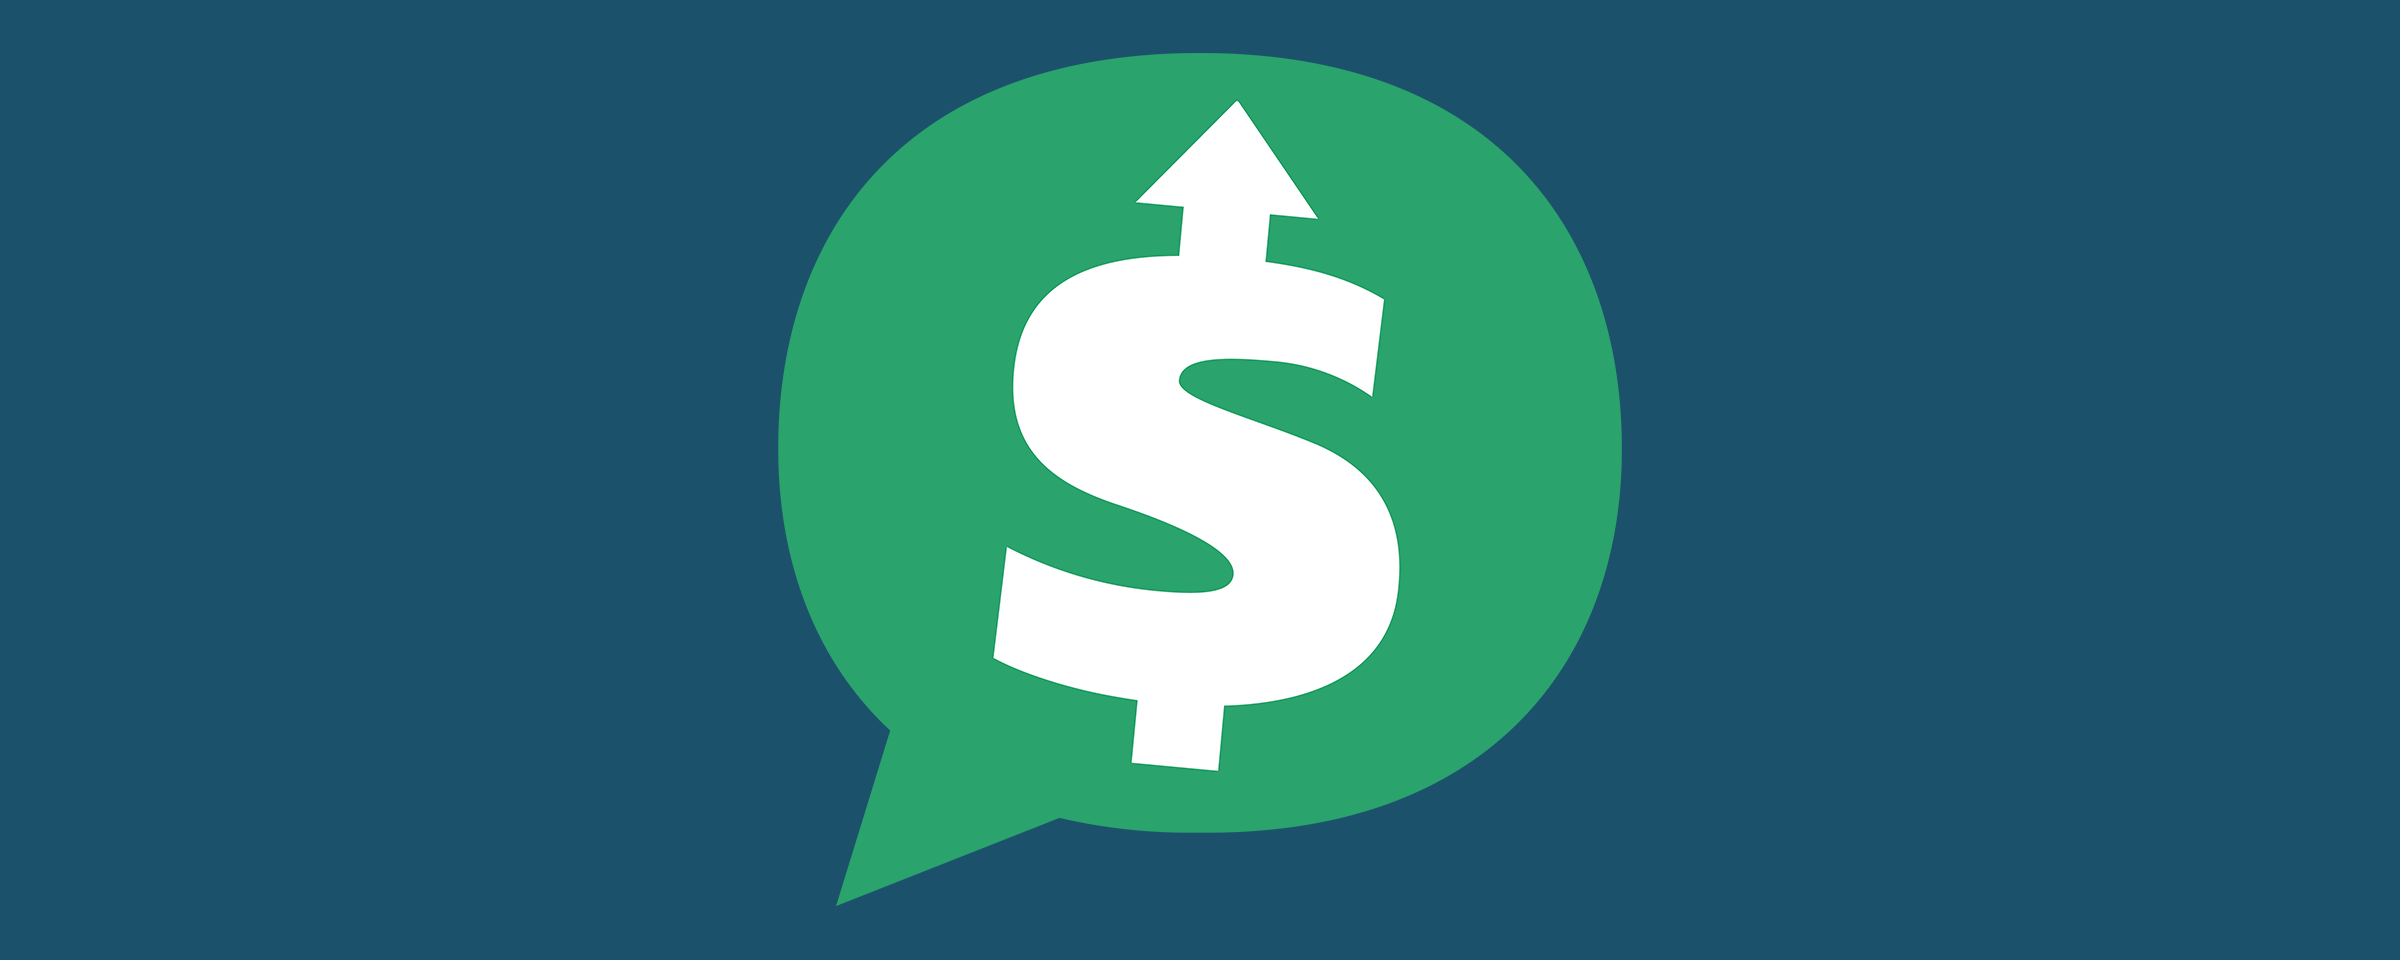 Blue and Green Money Logo - About Listen Money Matters!